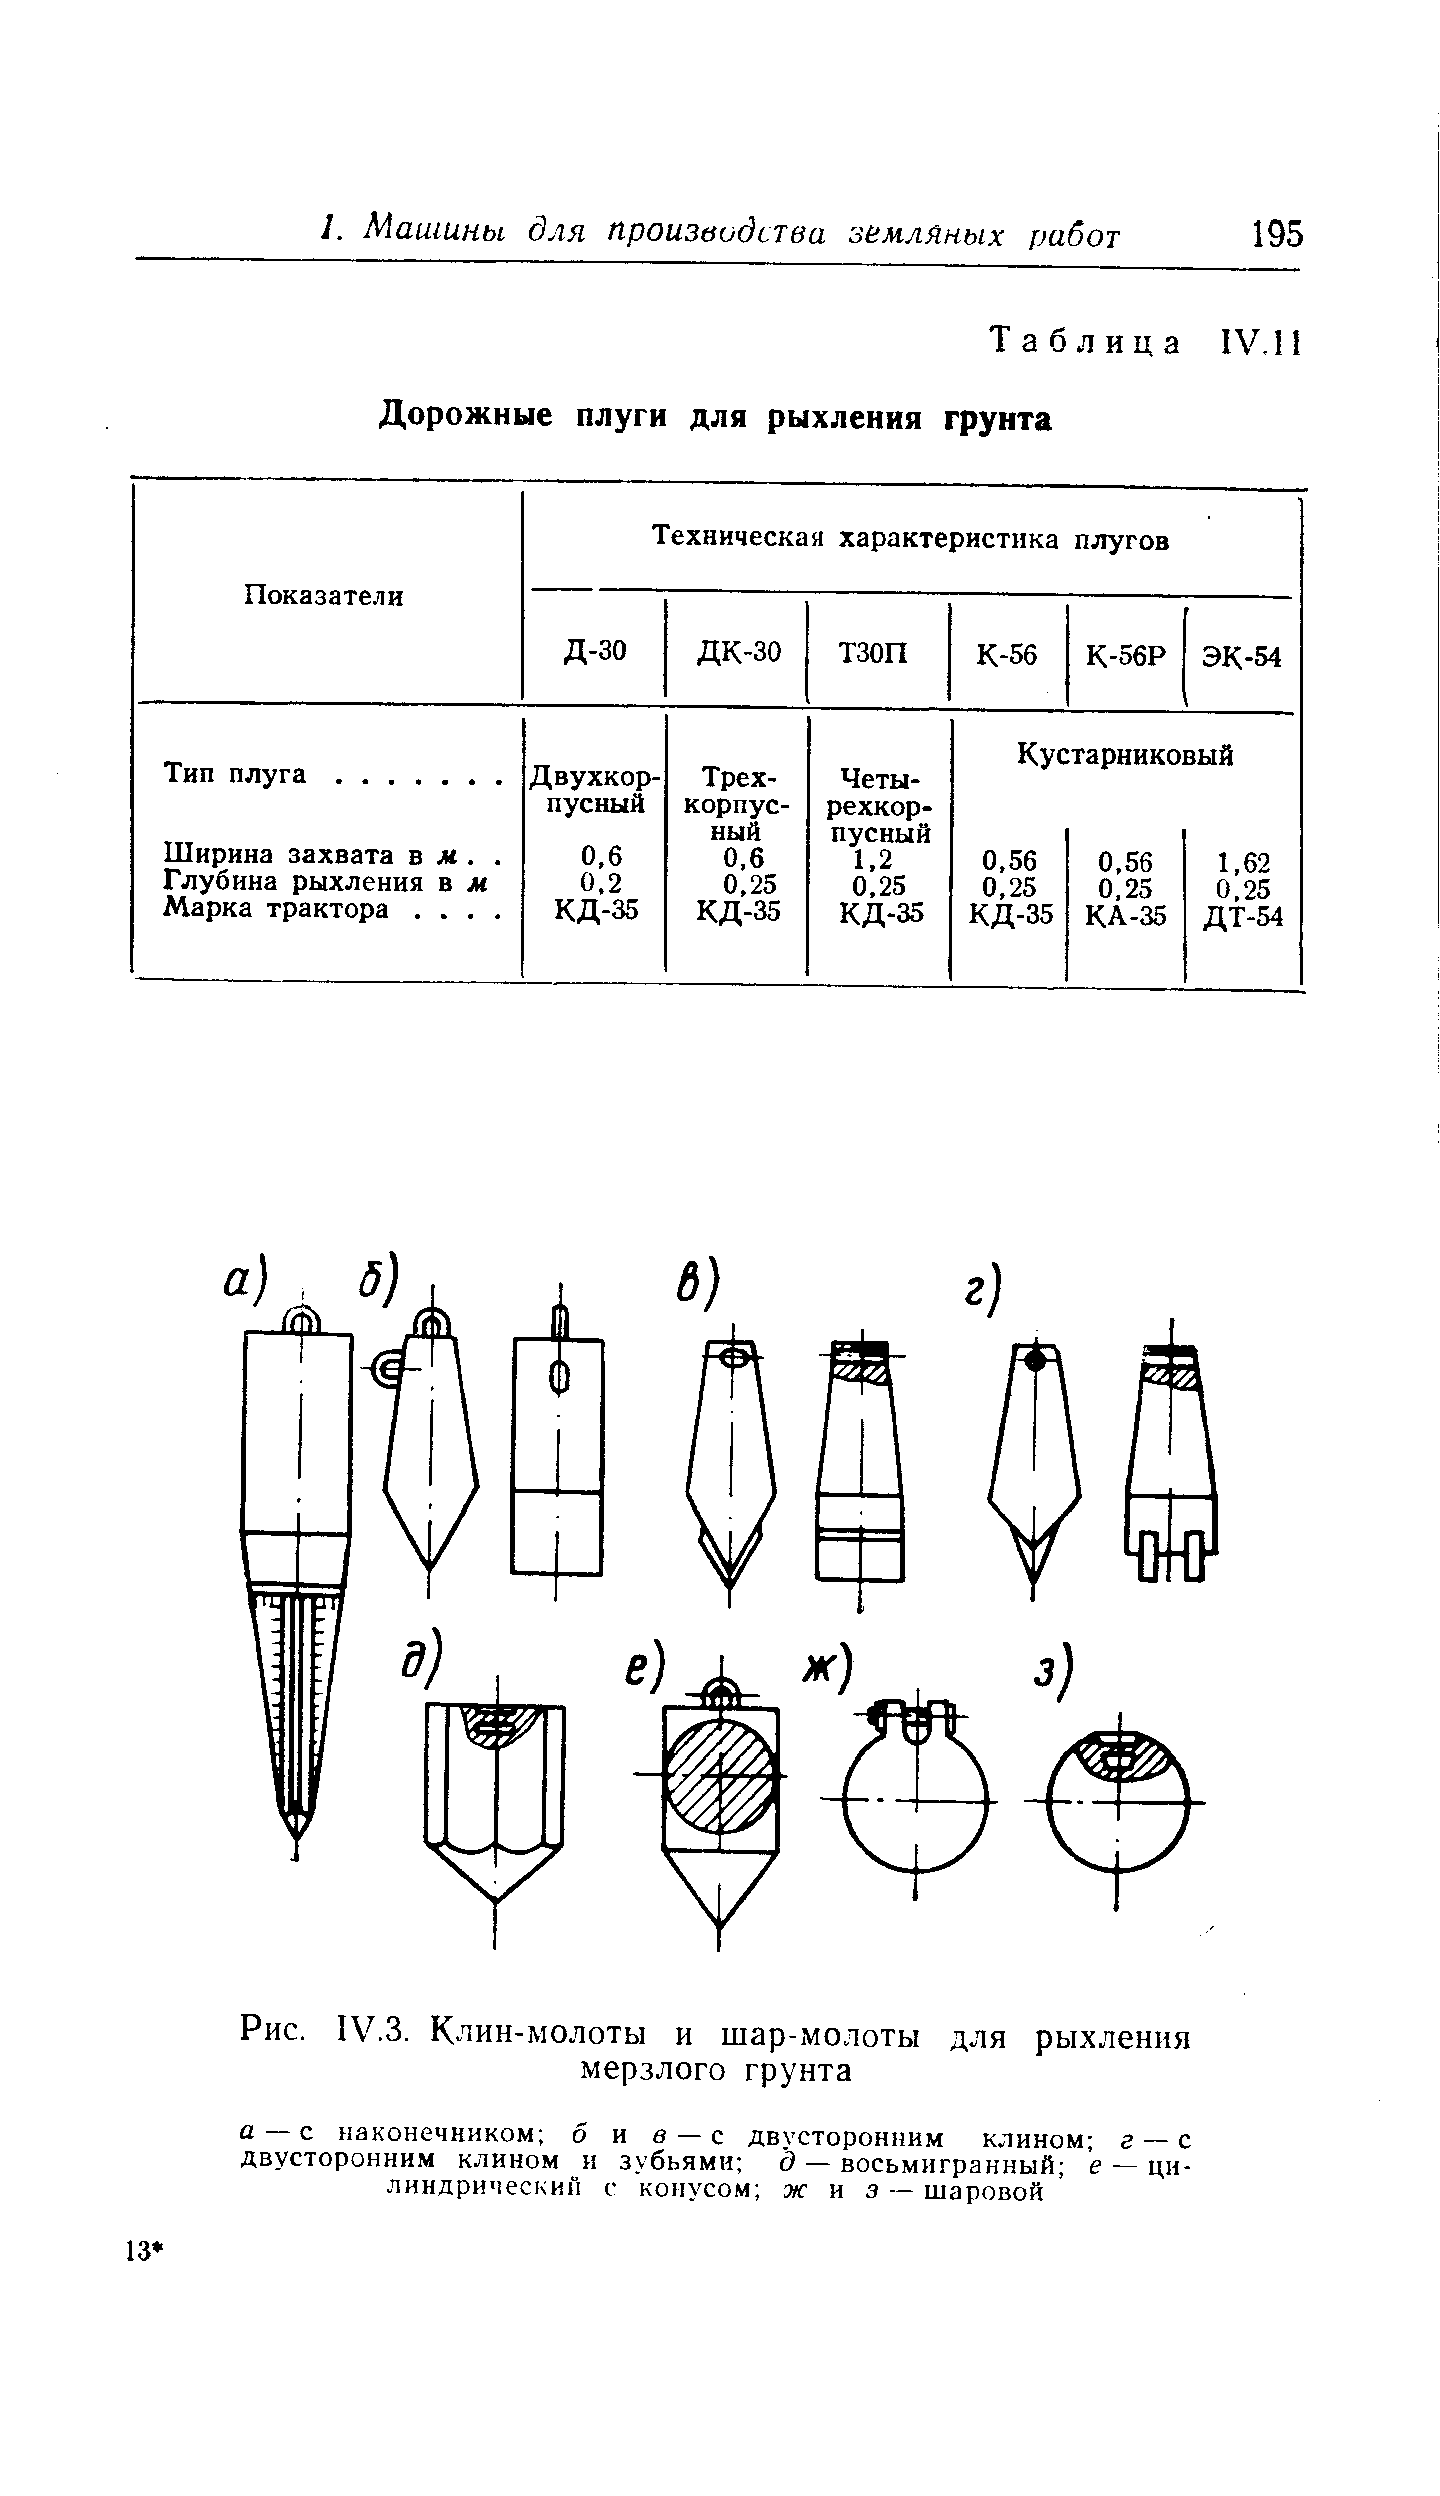 Рис. IV.3. Клин-молоты и шар-молоты для рыхления мерзлого грунта
